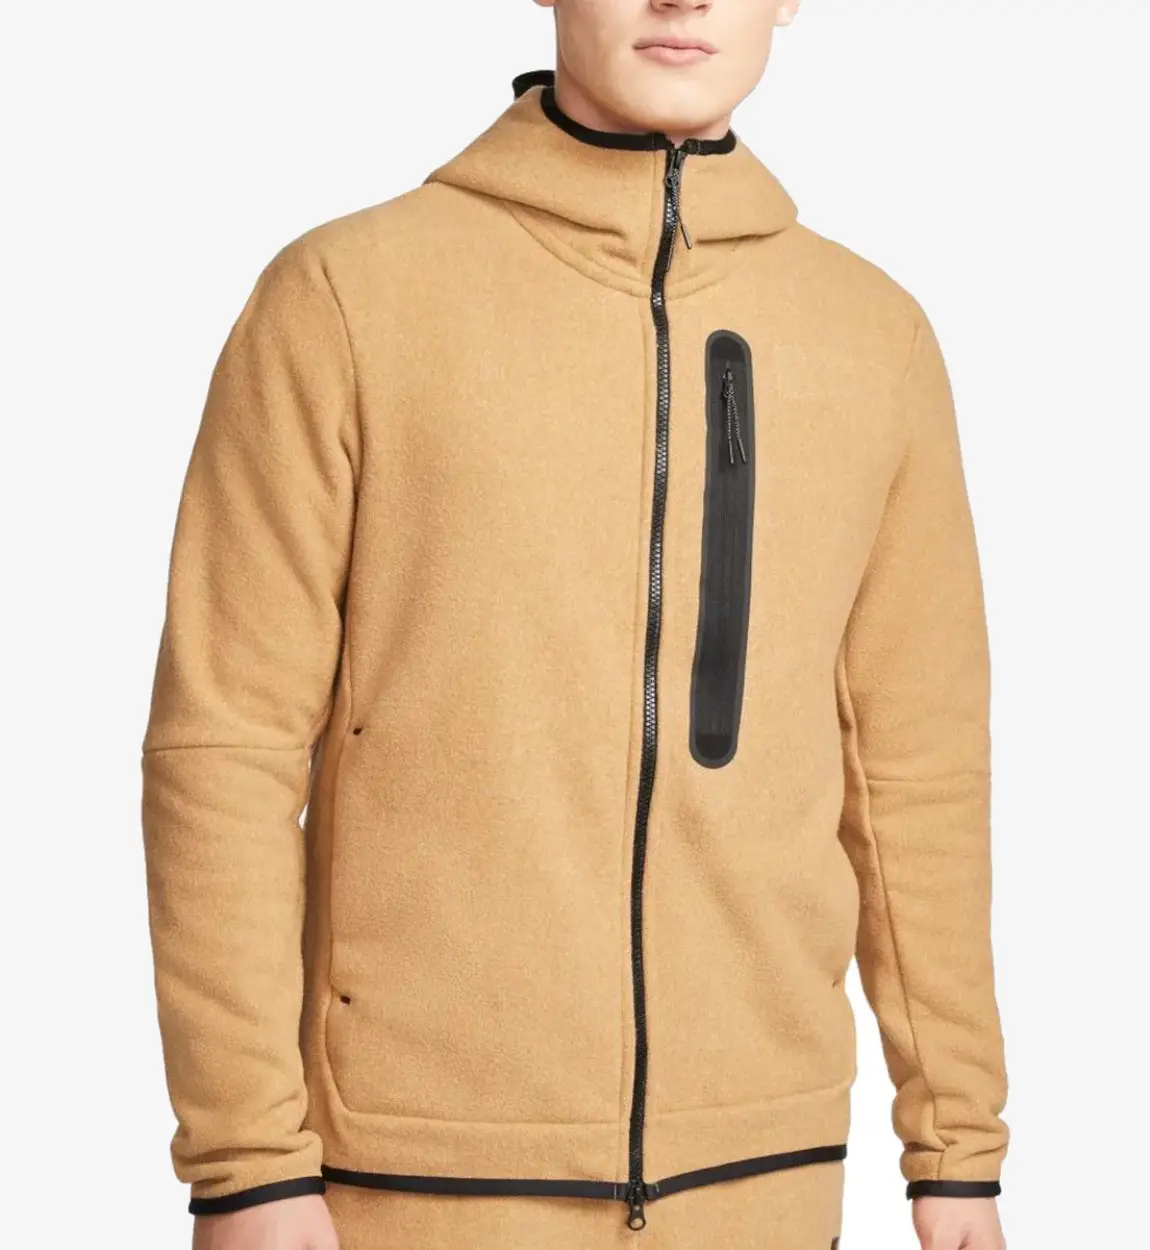 Full Zipped Tech Fleece Sportswear hoodie Tendon Sports